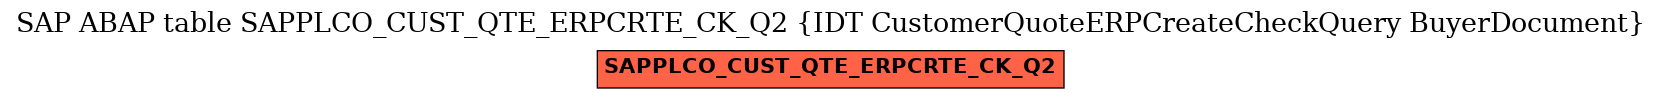 E-R Diagram for table SAPPLCO_CUST_QTE_ERPCRTE_CK_Q2 (IDT CustomerQuoteERPCreateCheckQuery BuyerDocument)